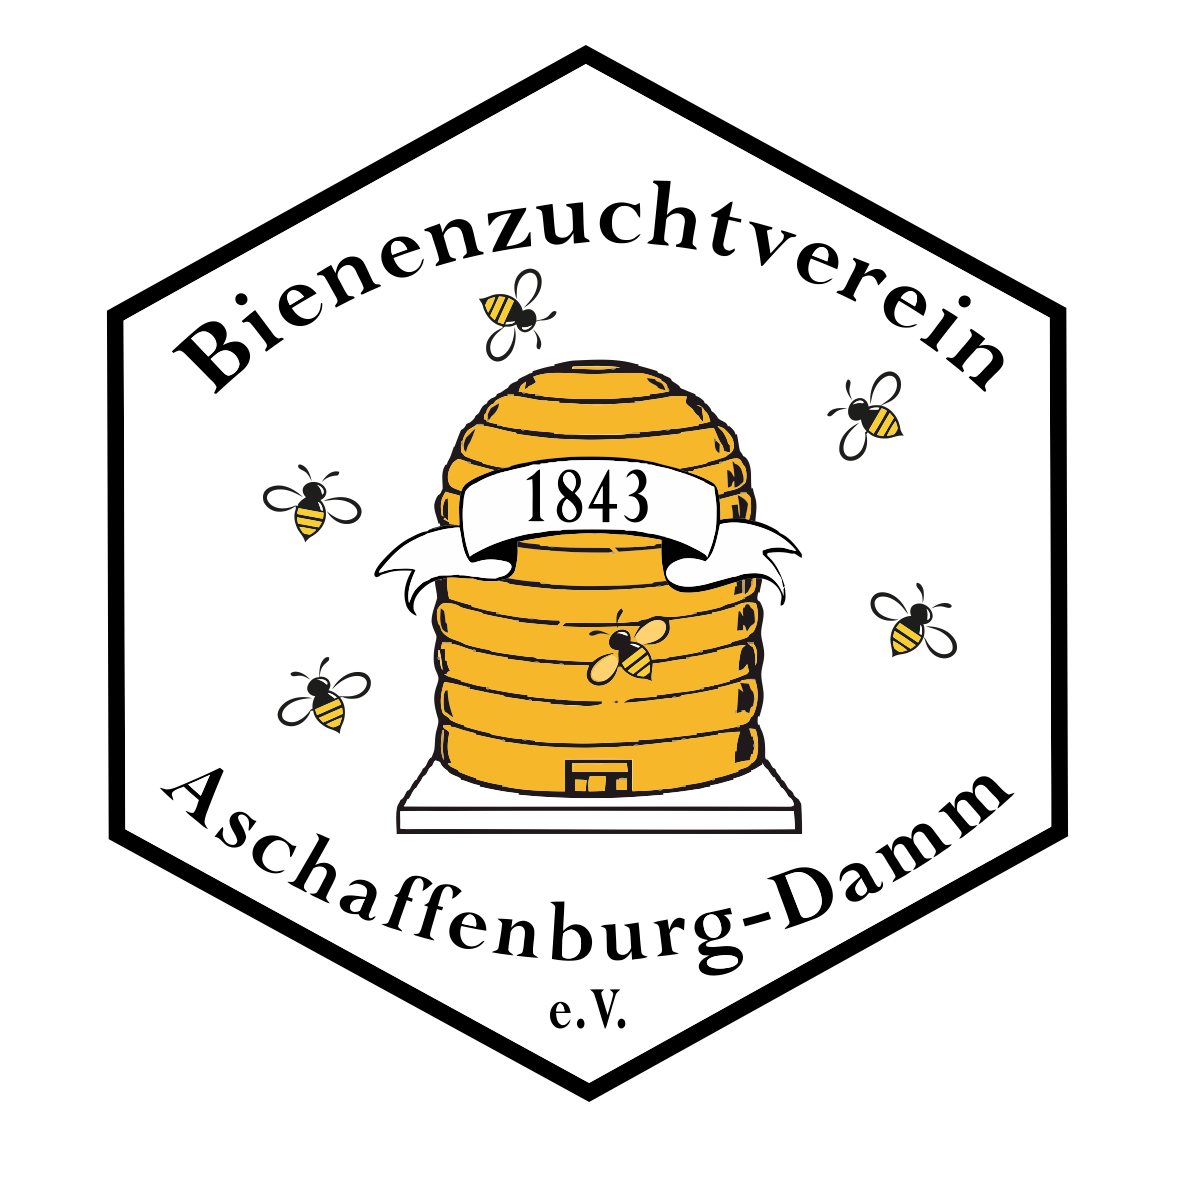 Bienenzuchtverein Aschaffenburg-Damm 1843 e.V.